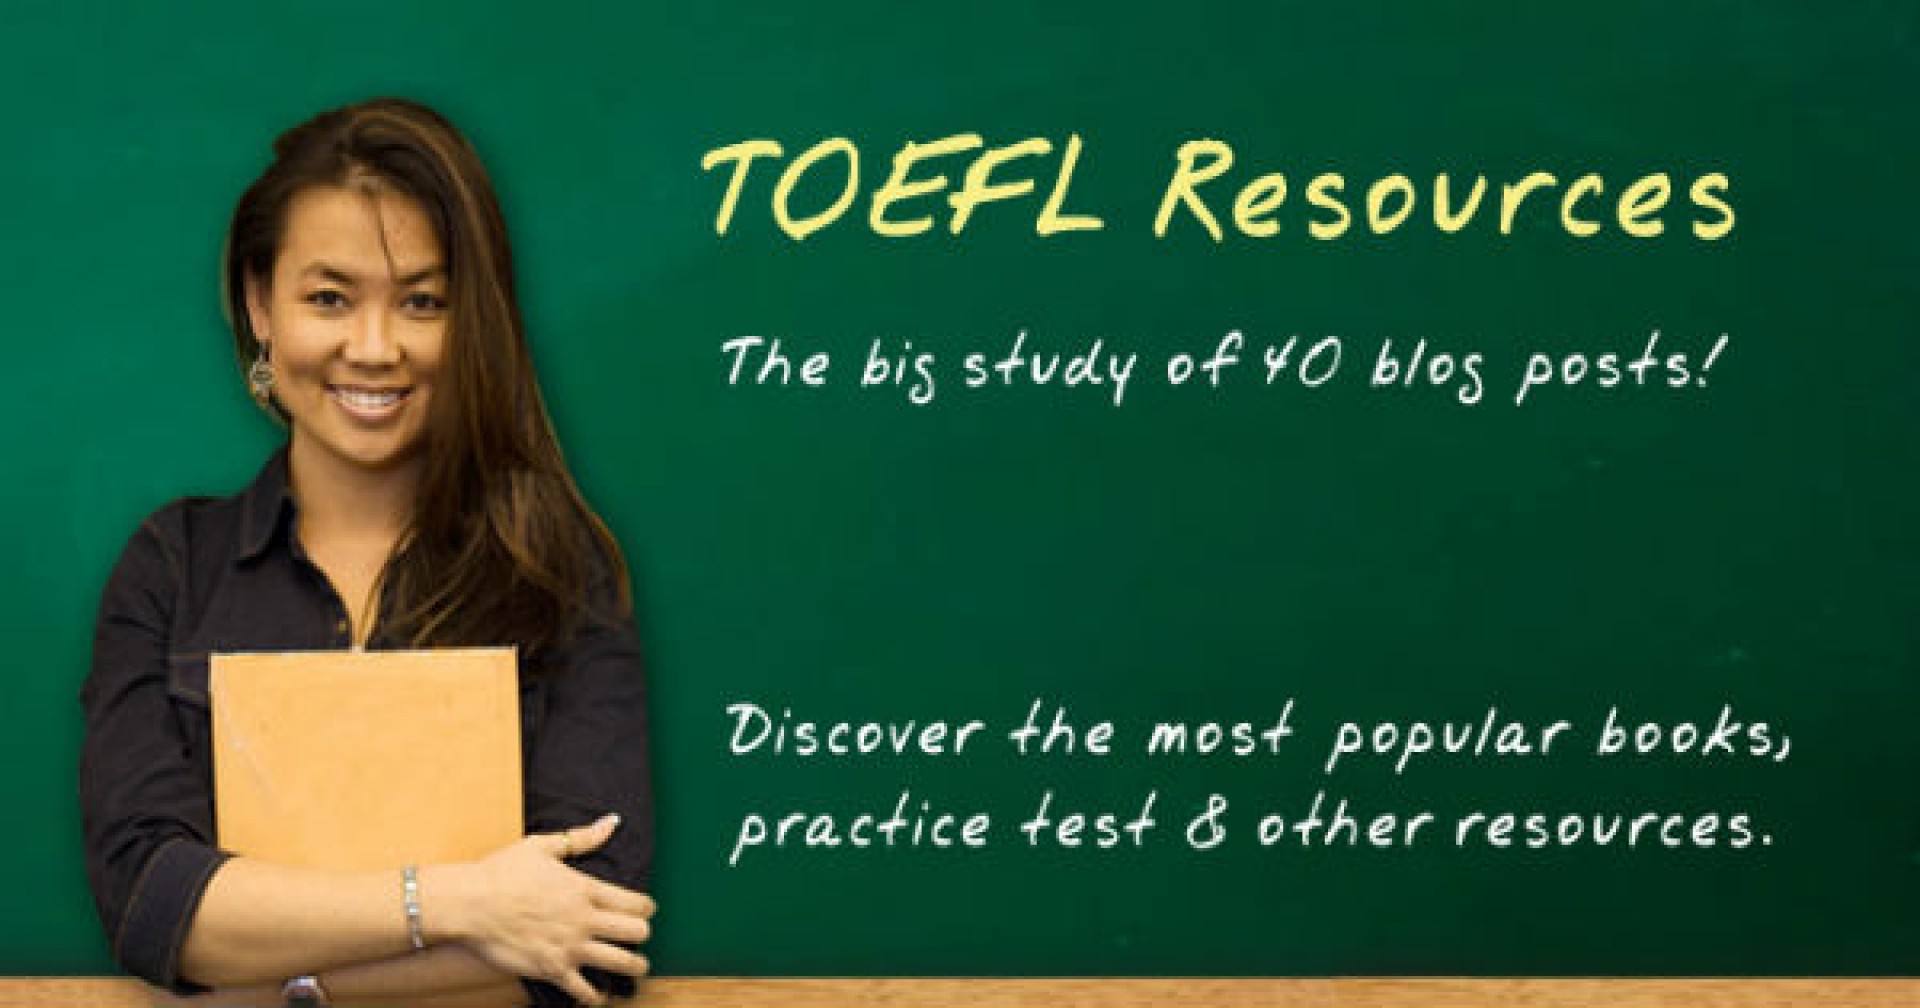 Hãy học TOEFL, bạn sẽ được những lợi ích sau